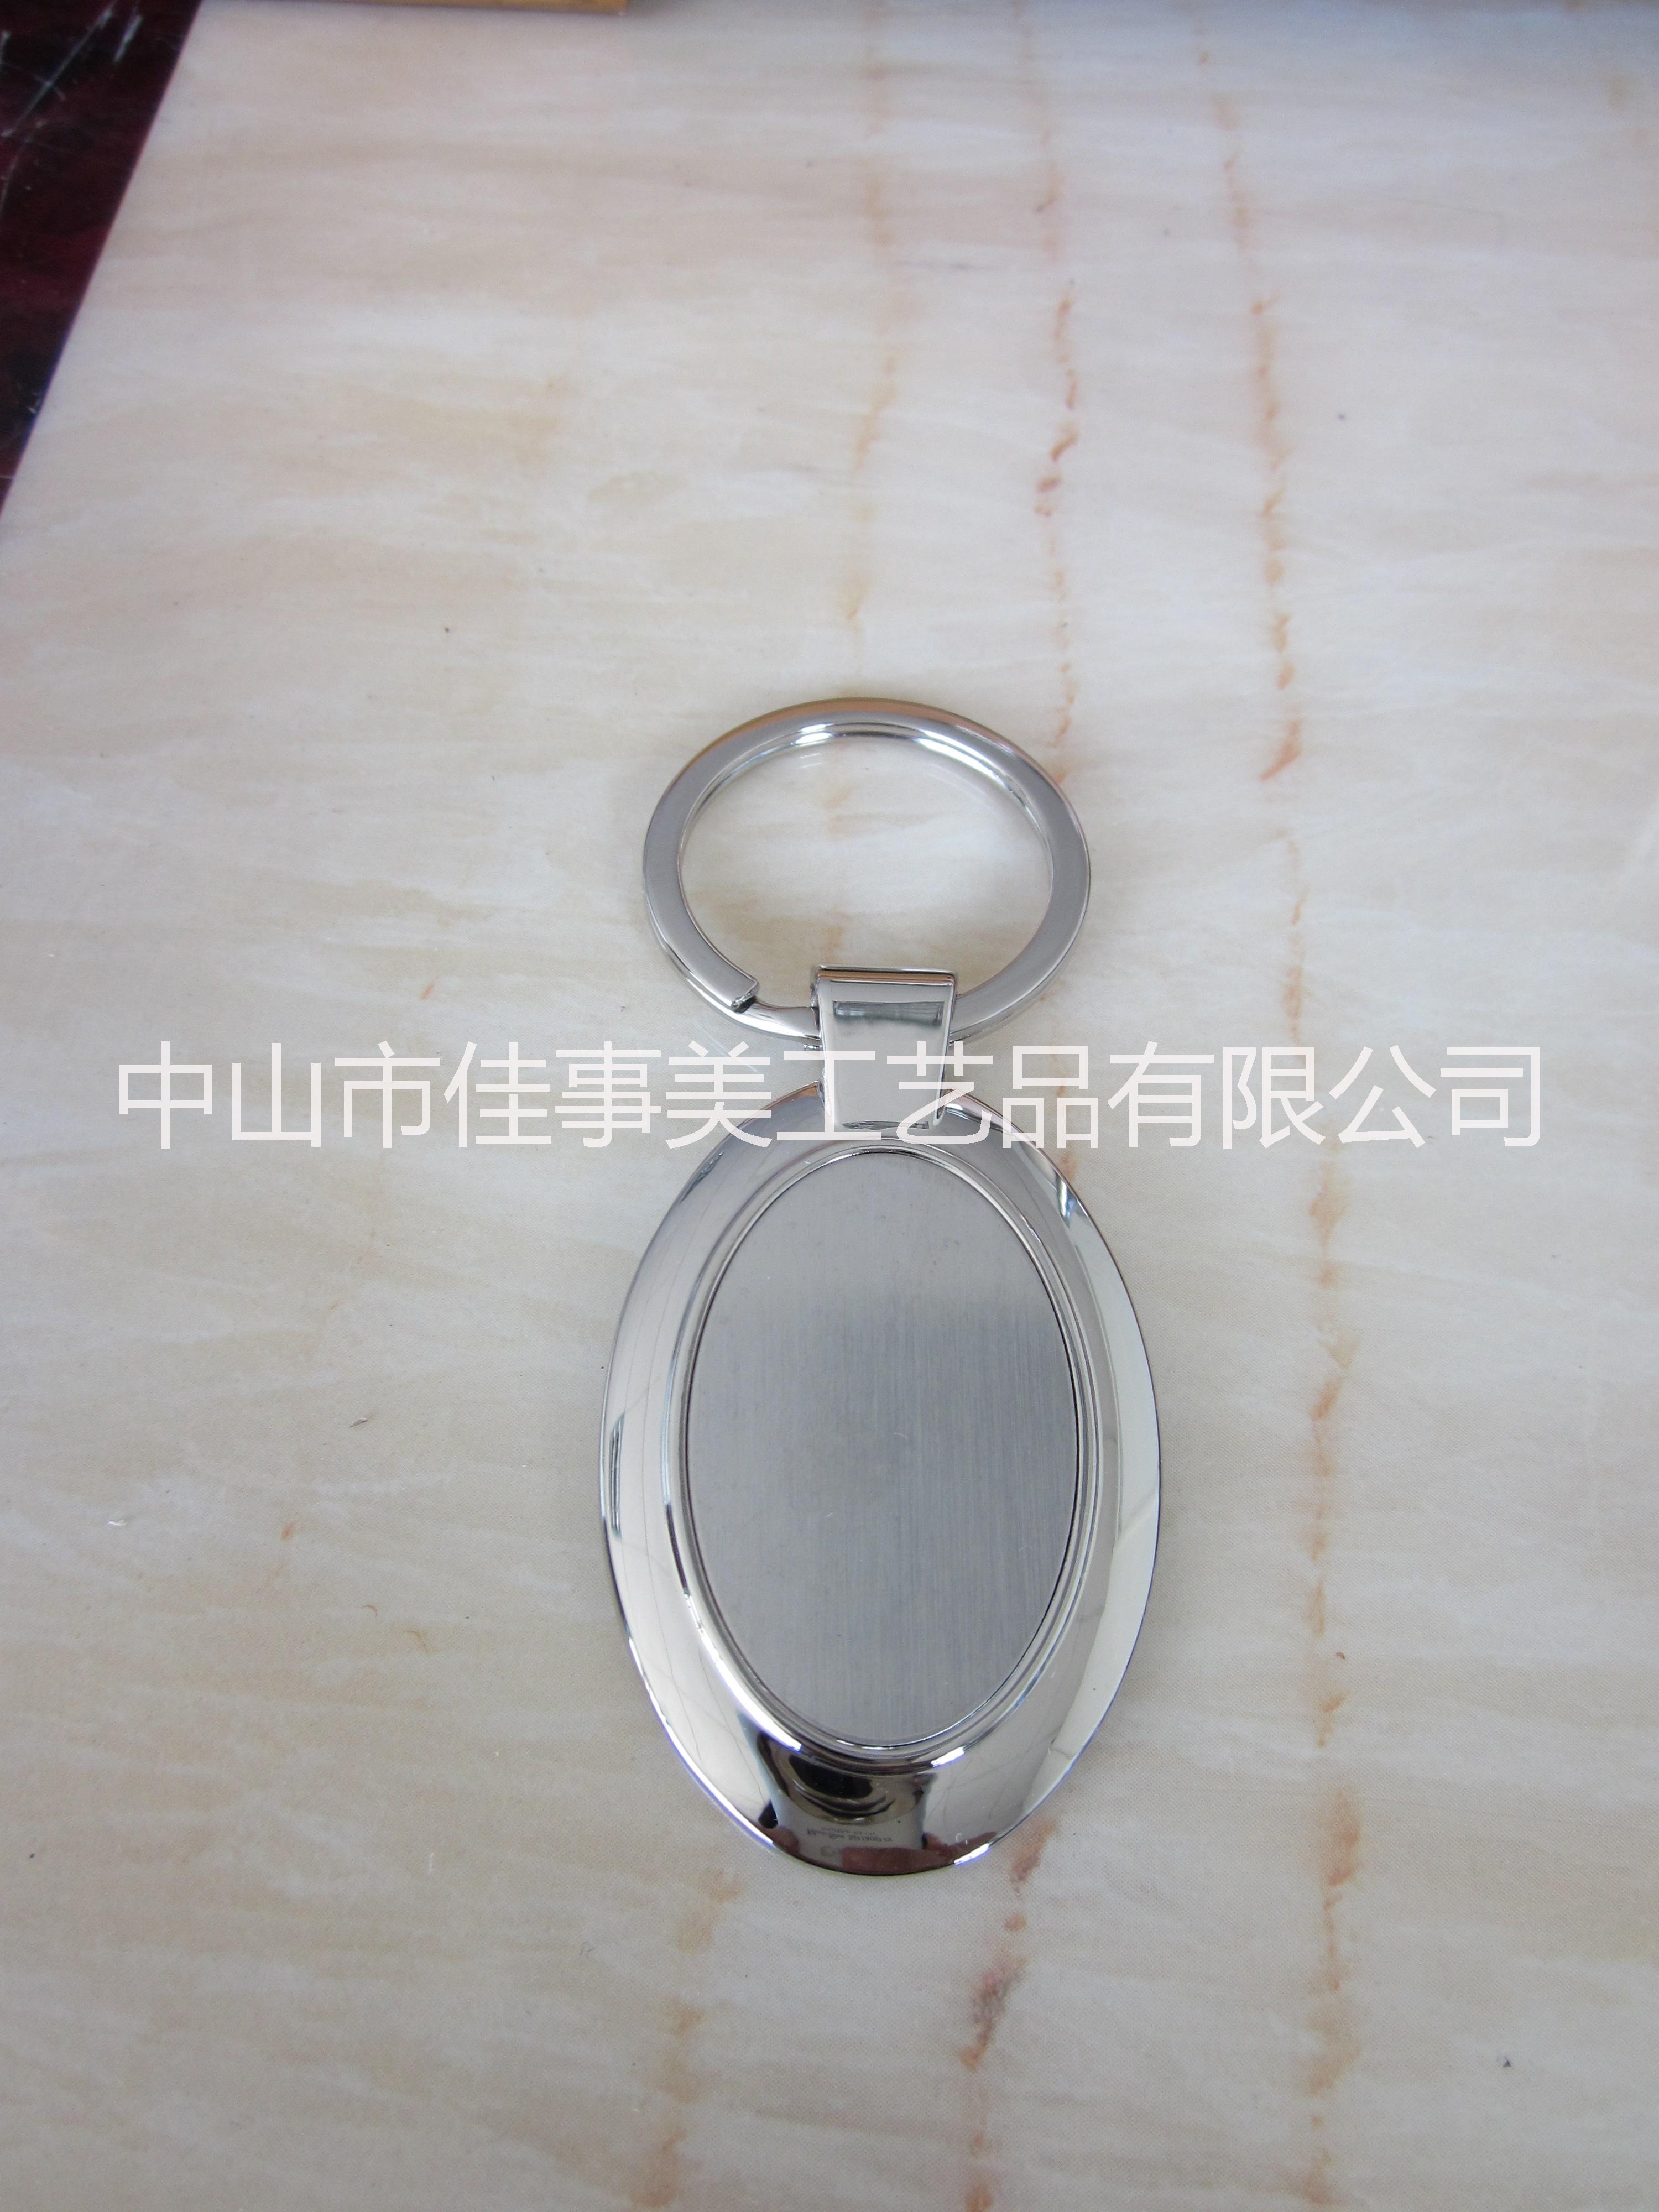 供应用于装饰的厂家专业生产钥匙扣简约钥匙扣